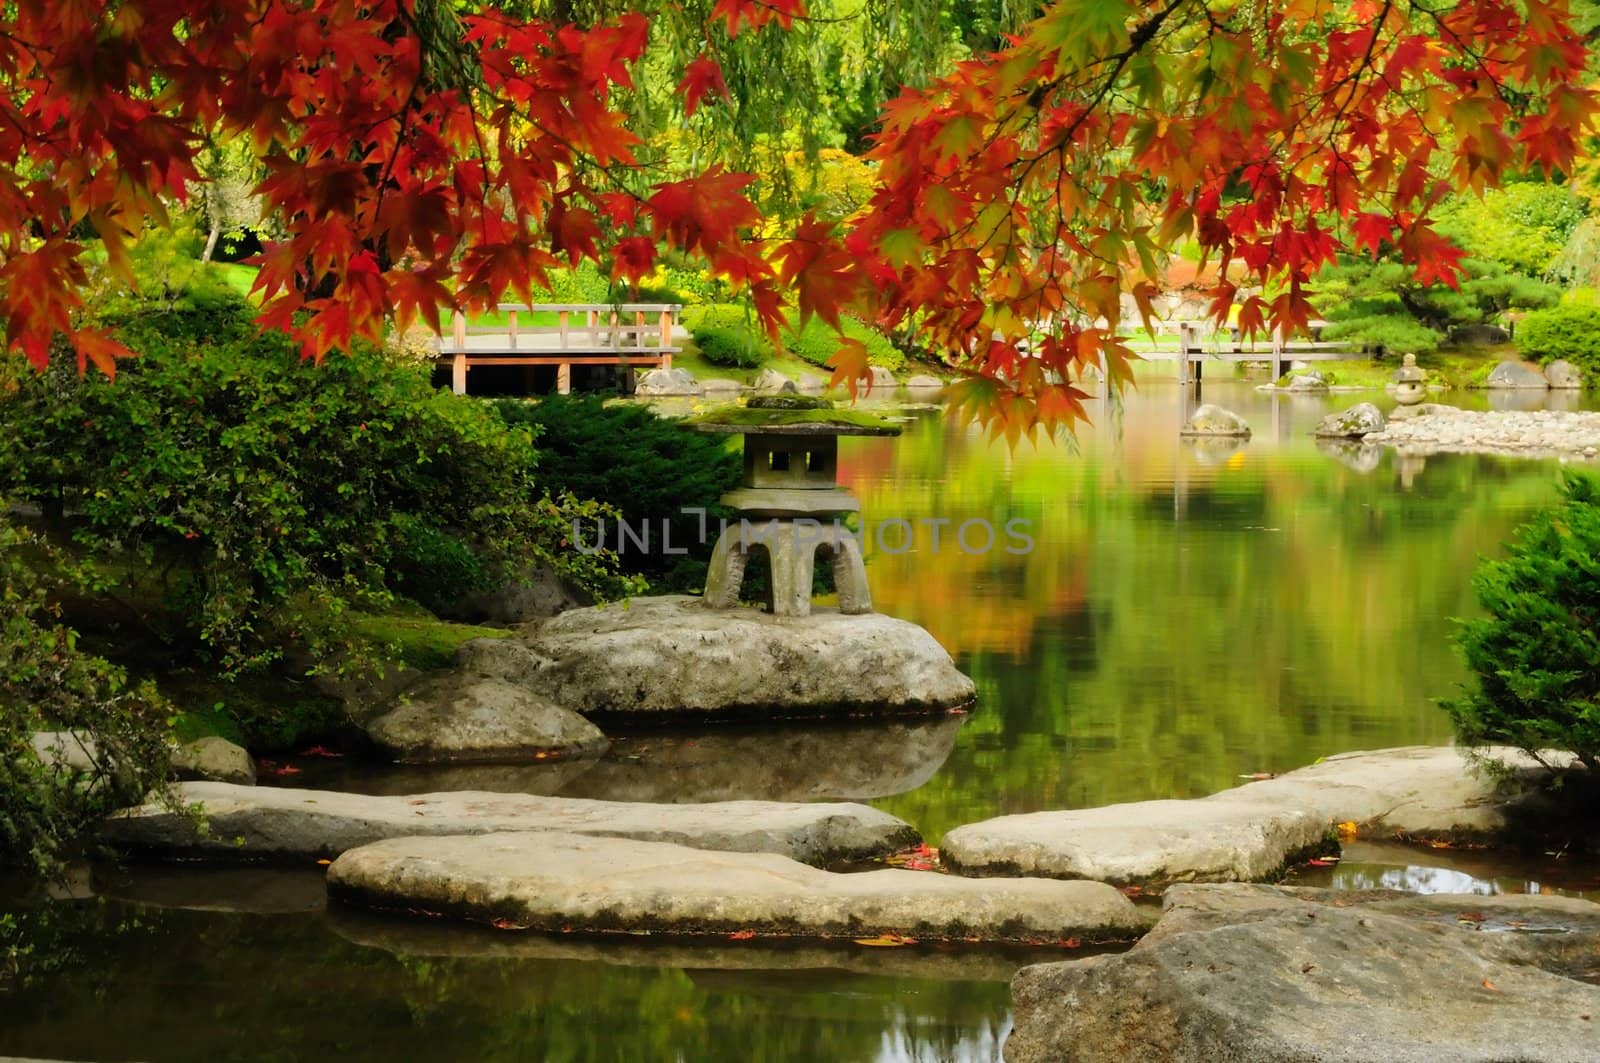 Beautiful Japanese Garden in autumn glory